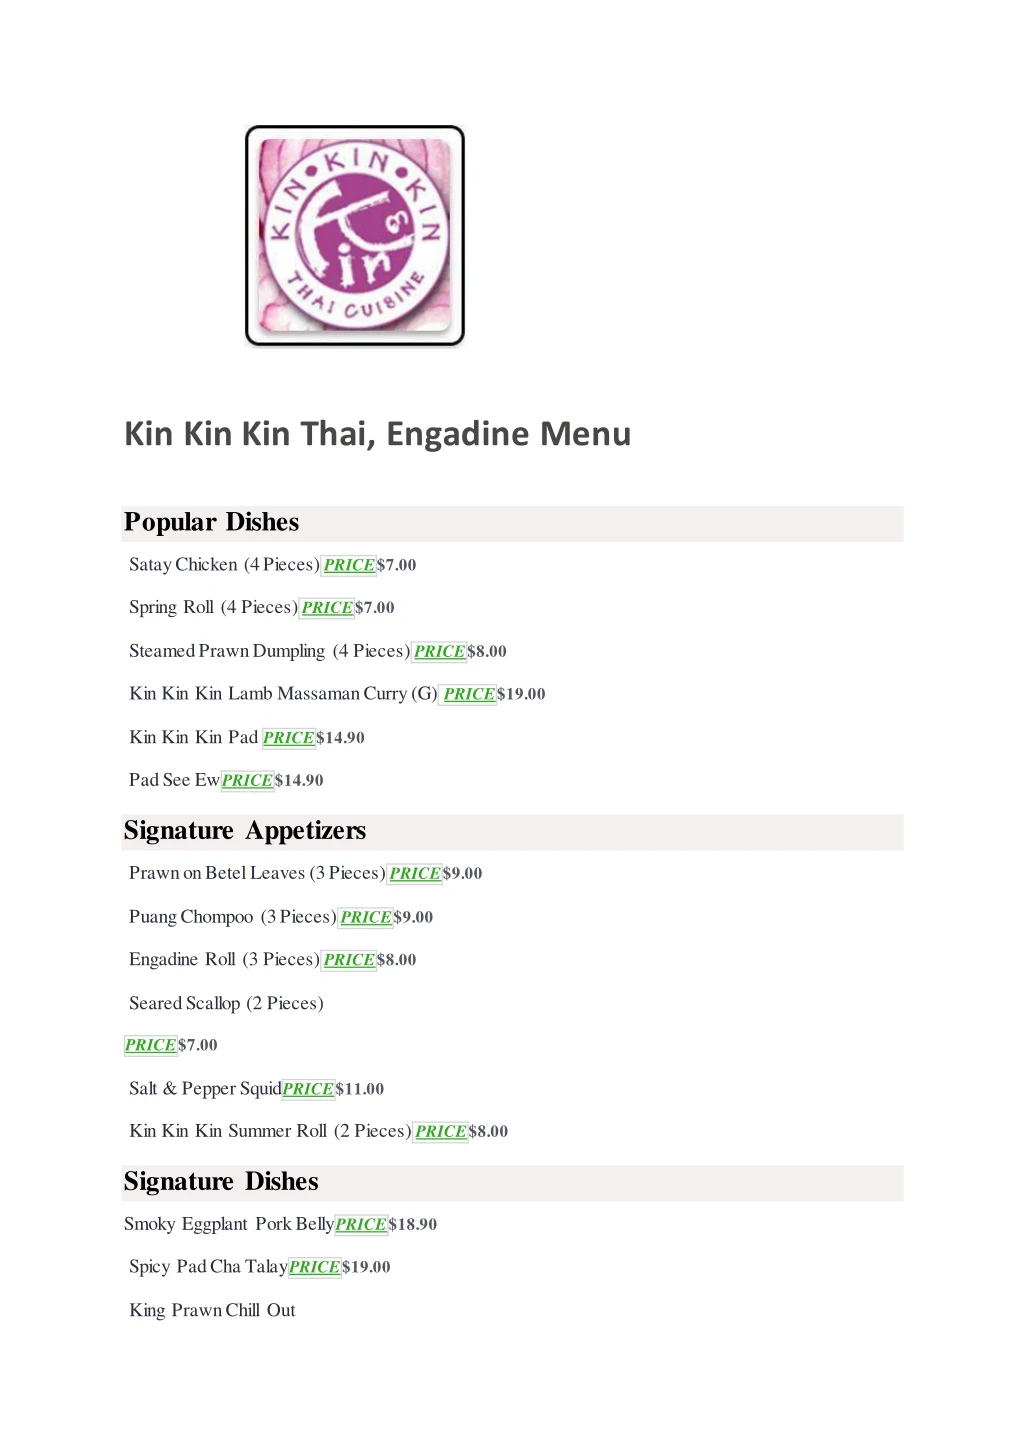 kin kin kin thai engadine menu